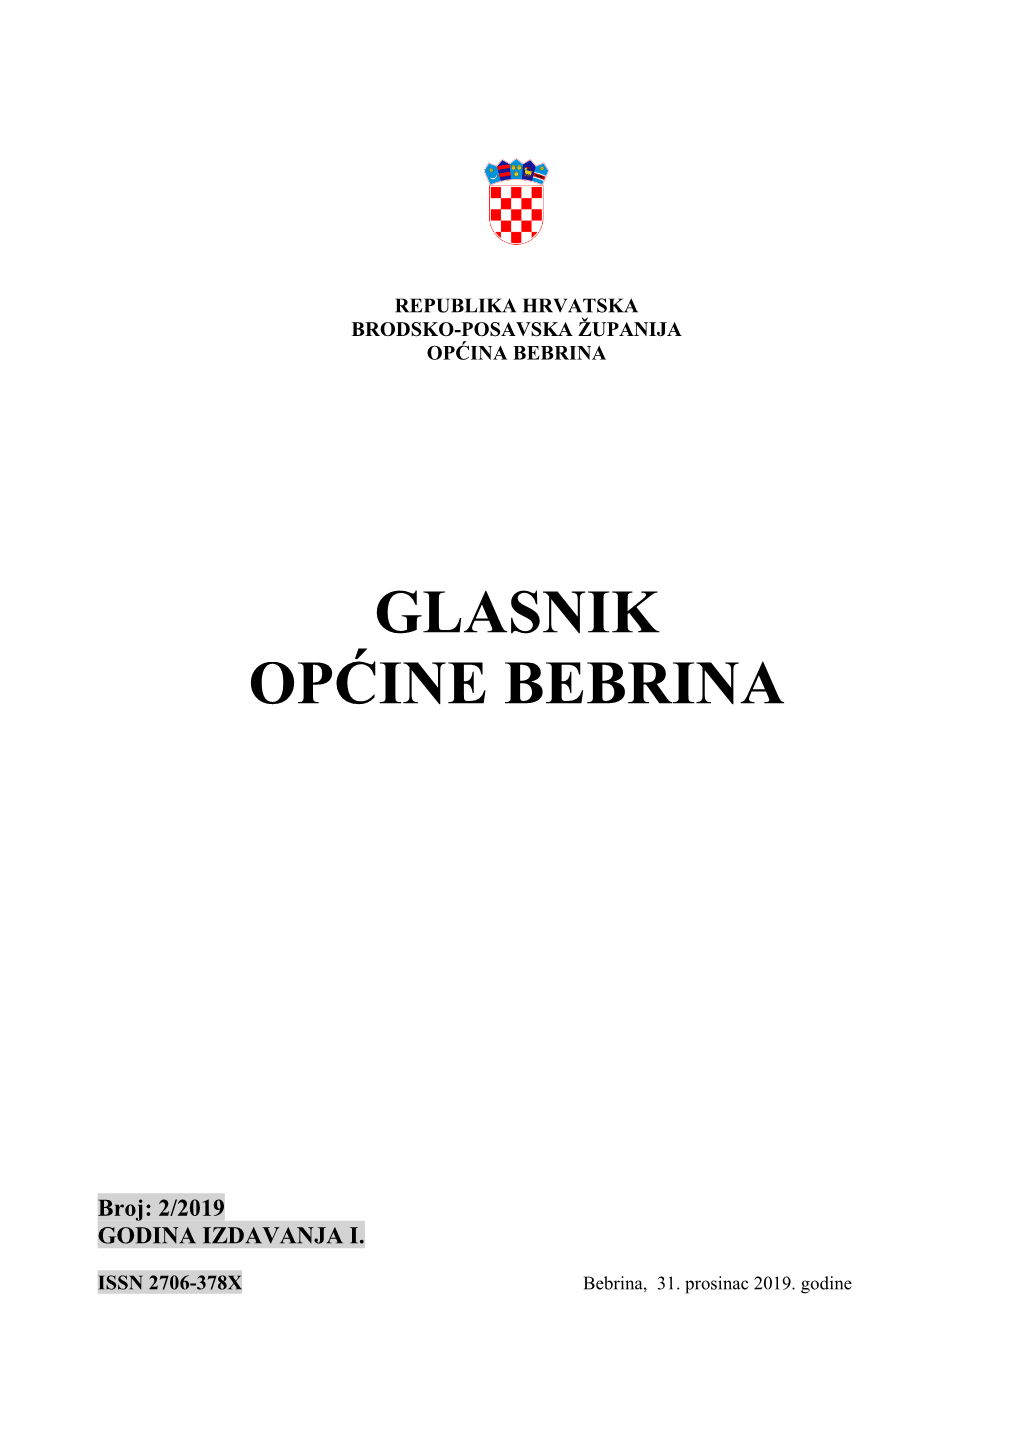 GLASNIK OPĆINE BEBRINA, Broj 2/2019